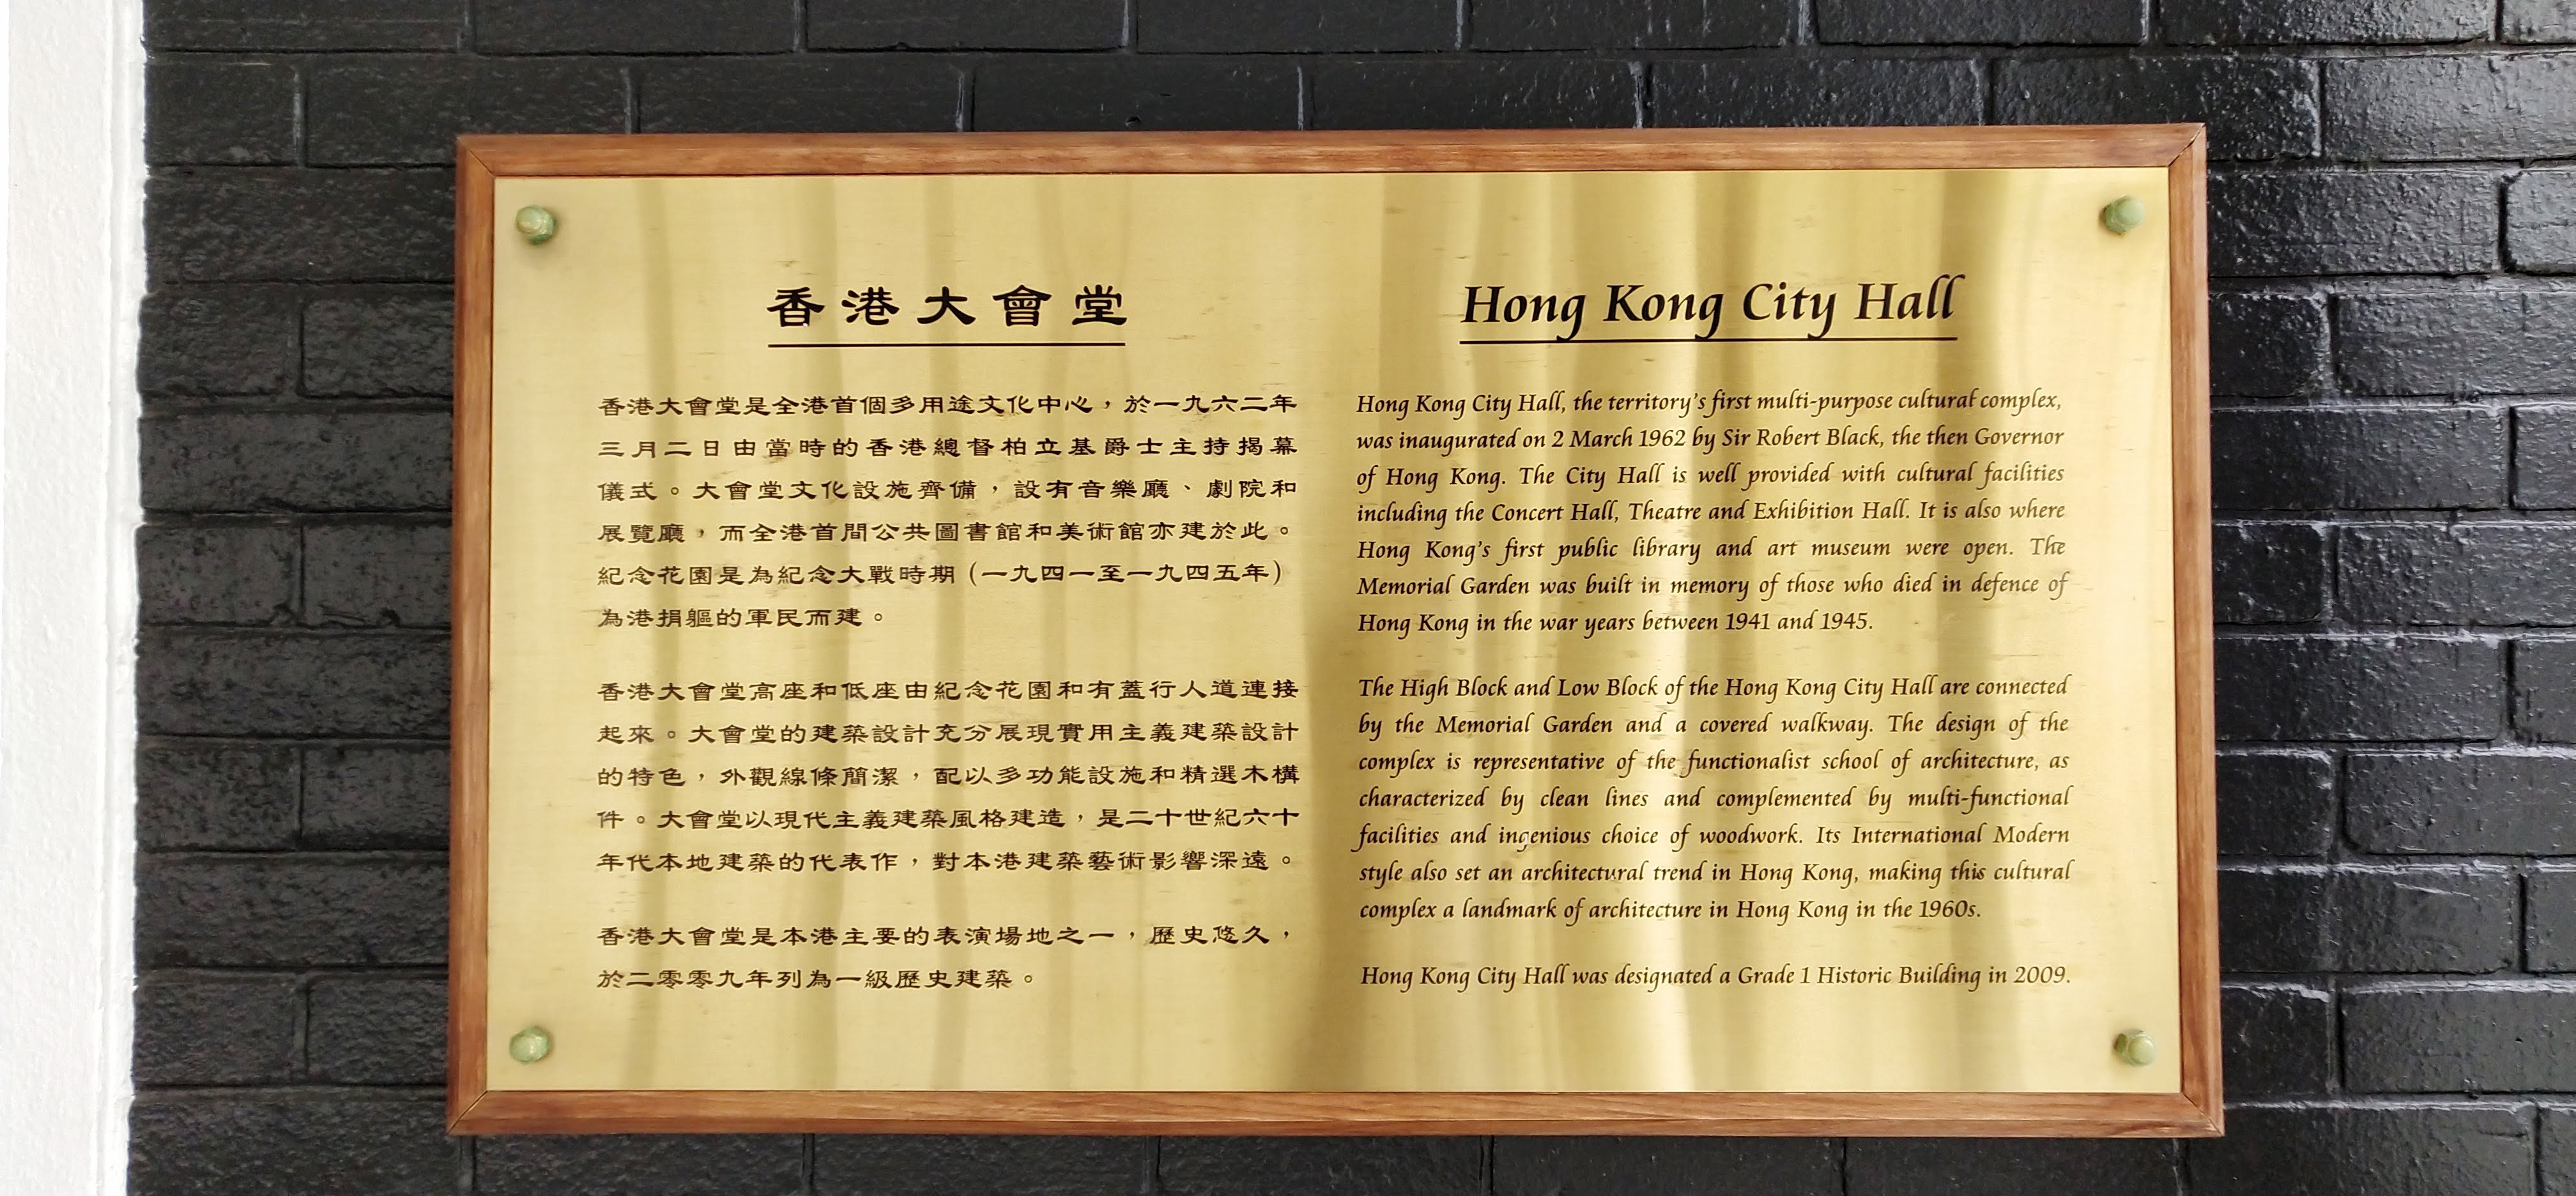 Introduction of Hong Kong City Hall